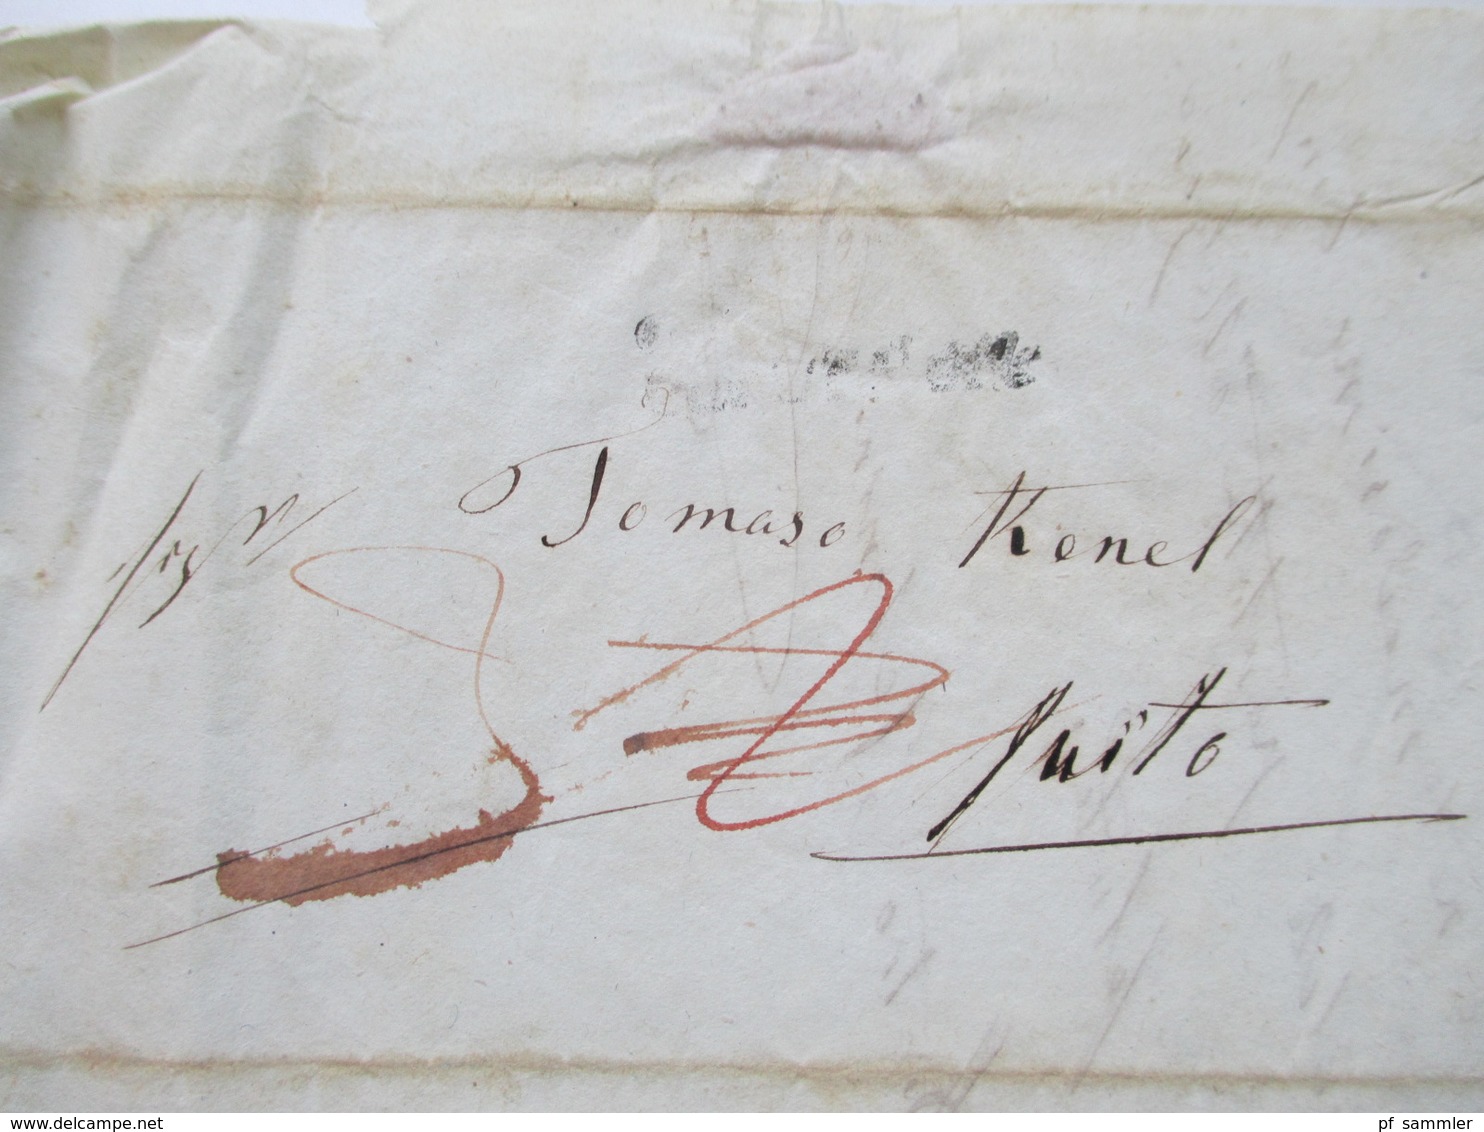 Schweiz 1847 Markenloser Brief / Bartaxe / Taxvermerk Und Blauer Stempel K2 Schwyz 2. Feb 47 - 1843-1852 Correos Federales Y Cantonales